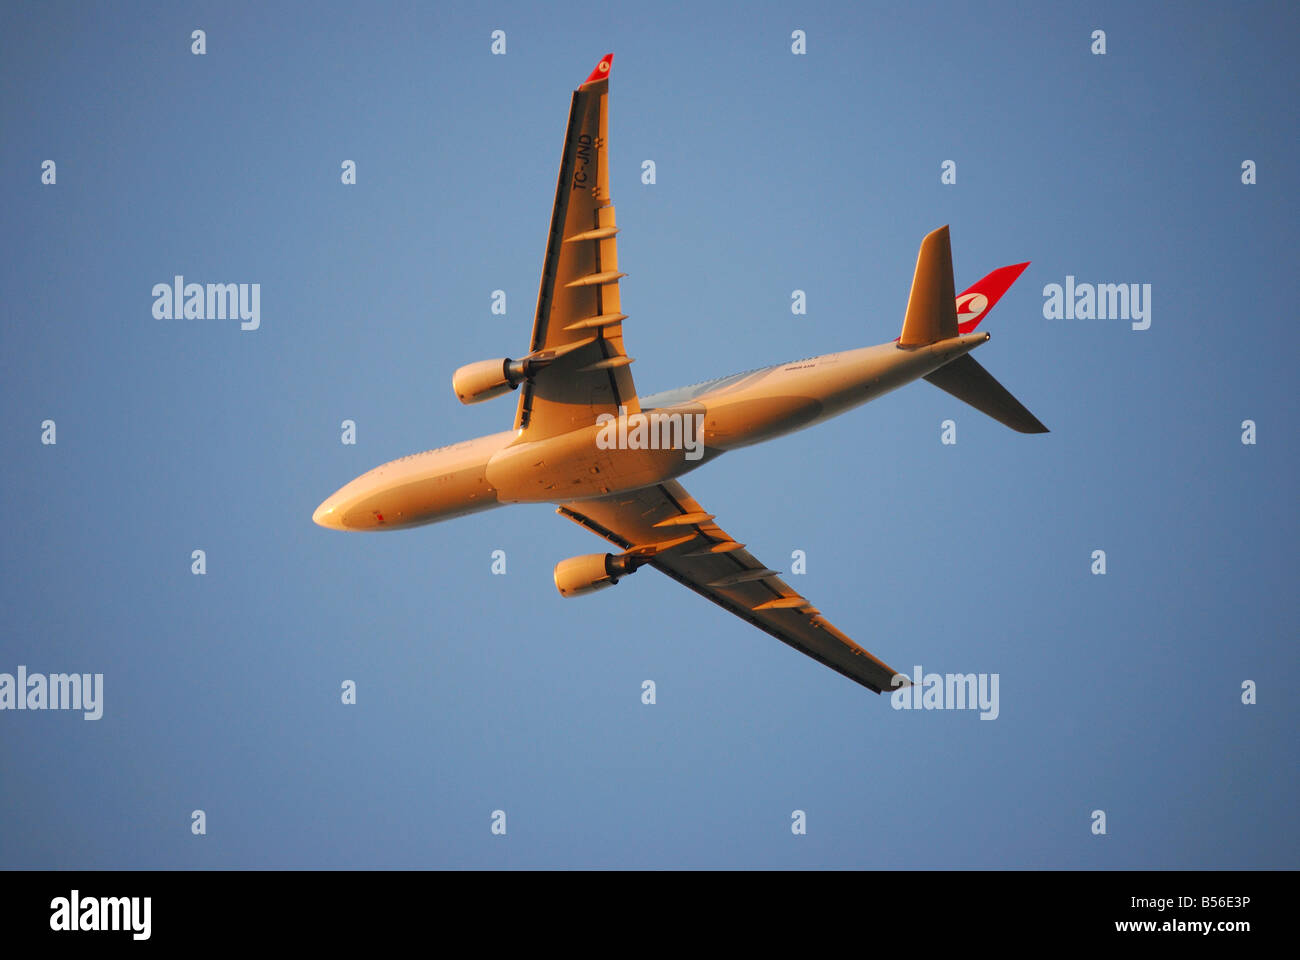 Turkish Airlines Airbus A330 Flugzeug abheben, Heathrow Airport, Greater London, England, Vereinigtes Königreich Stockfoto